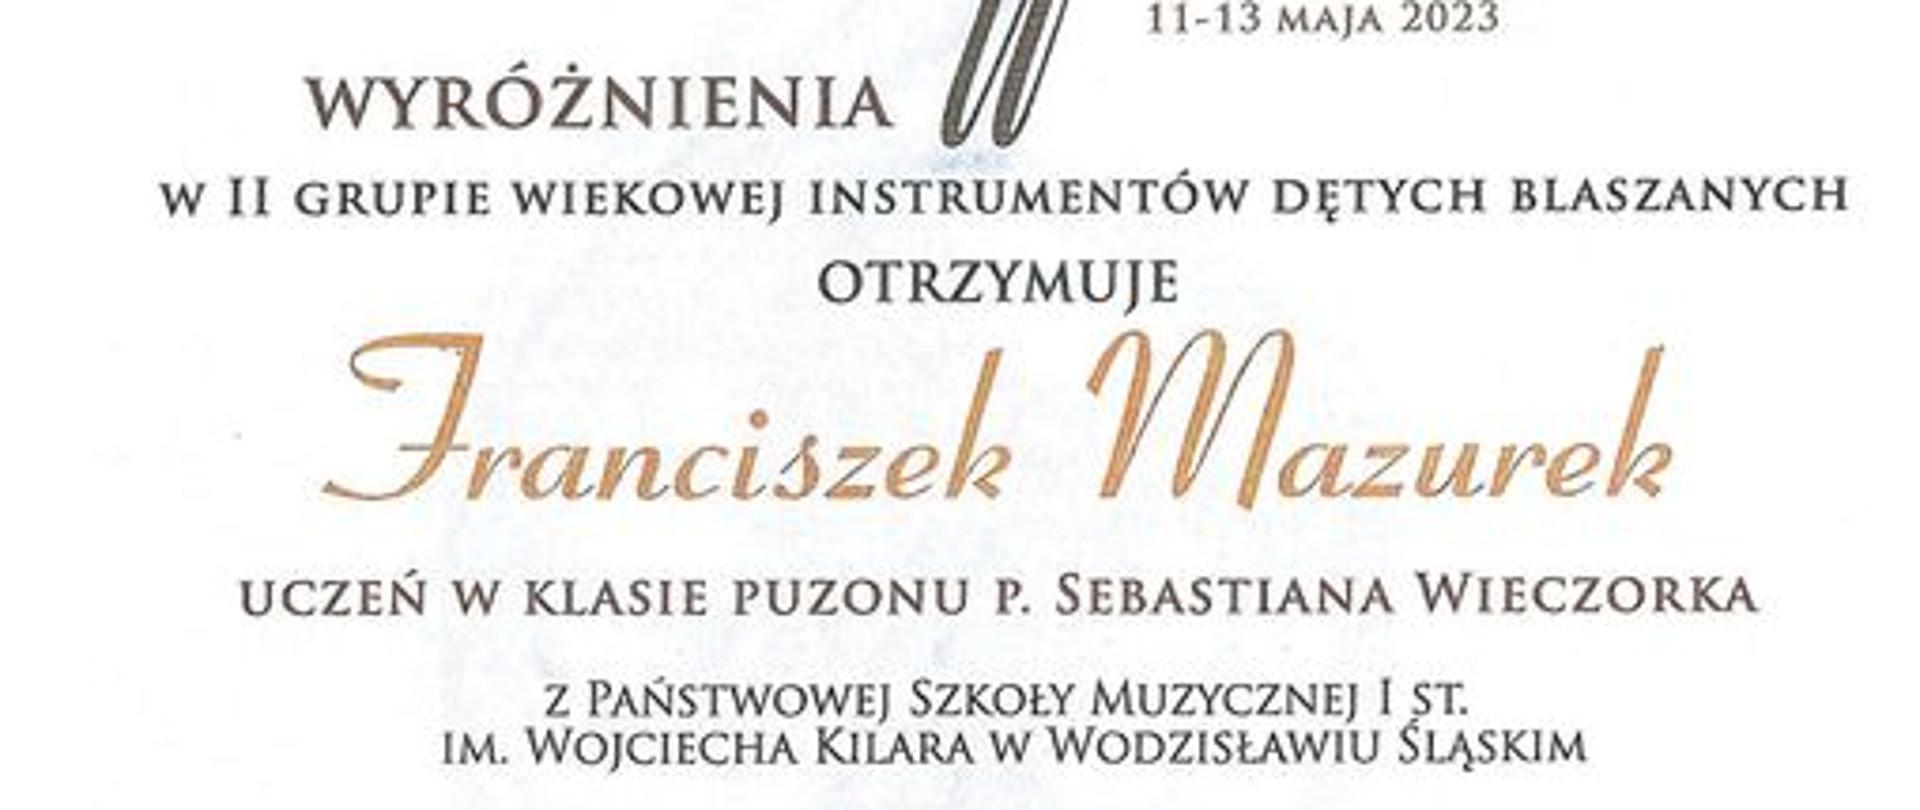 Dyplom z napisem "Dyplom wyróżnienia w II grupie wiekowej instrumentów dętych blaszanych otrzymuje Franciszek Mazurek Uczeń w klasie puzonu p. Sebastiana Wieczorka"